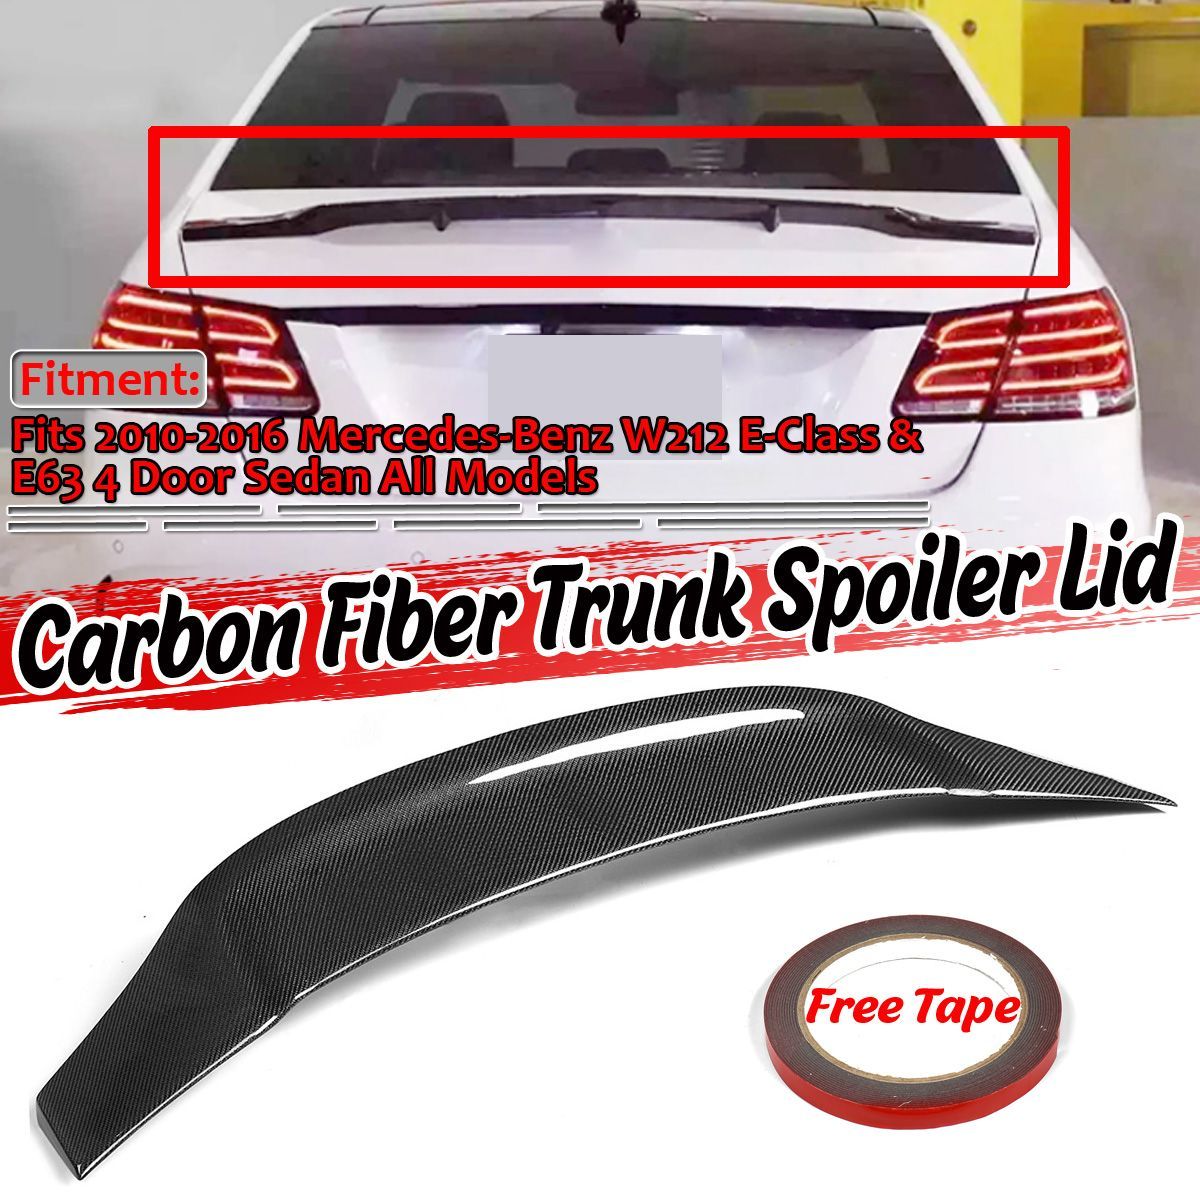 Real-Carbon-Fiber-Trunk-Spoiler-Lid-for-Mercedes-Benz-W212-E300-E350-E550-E63-AMG-2010-2016-1672486